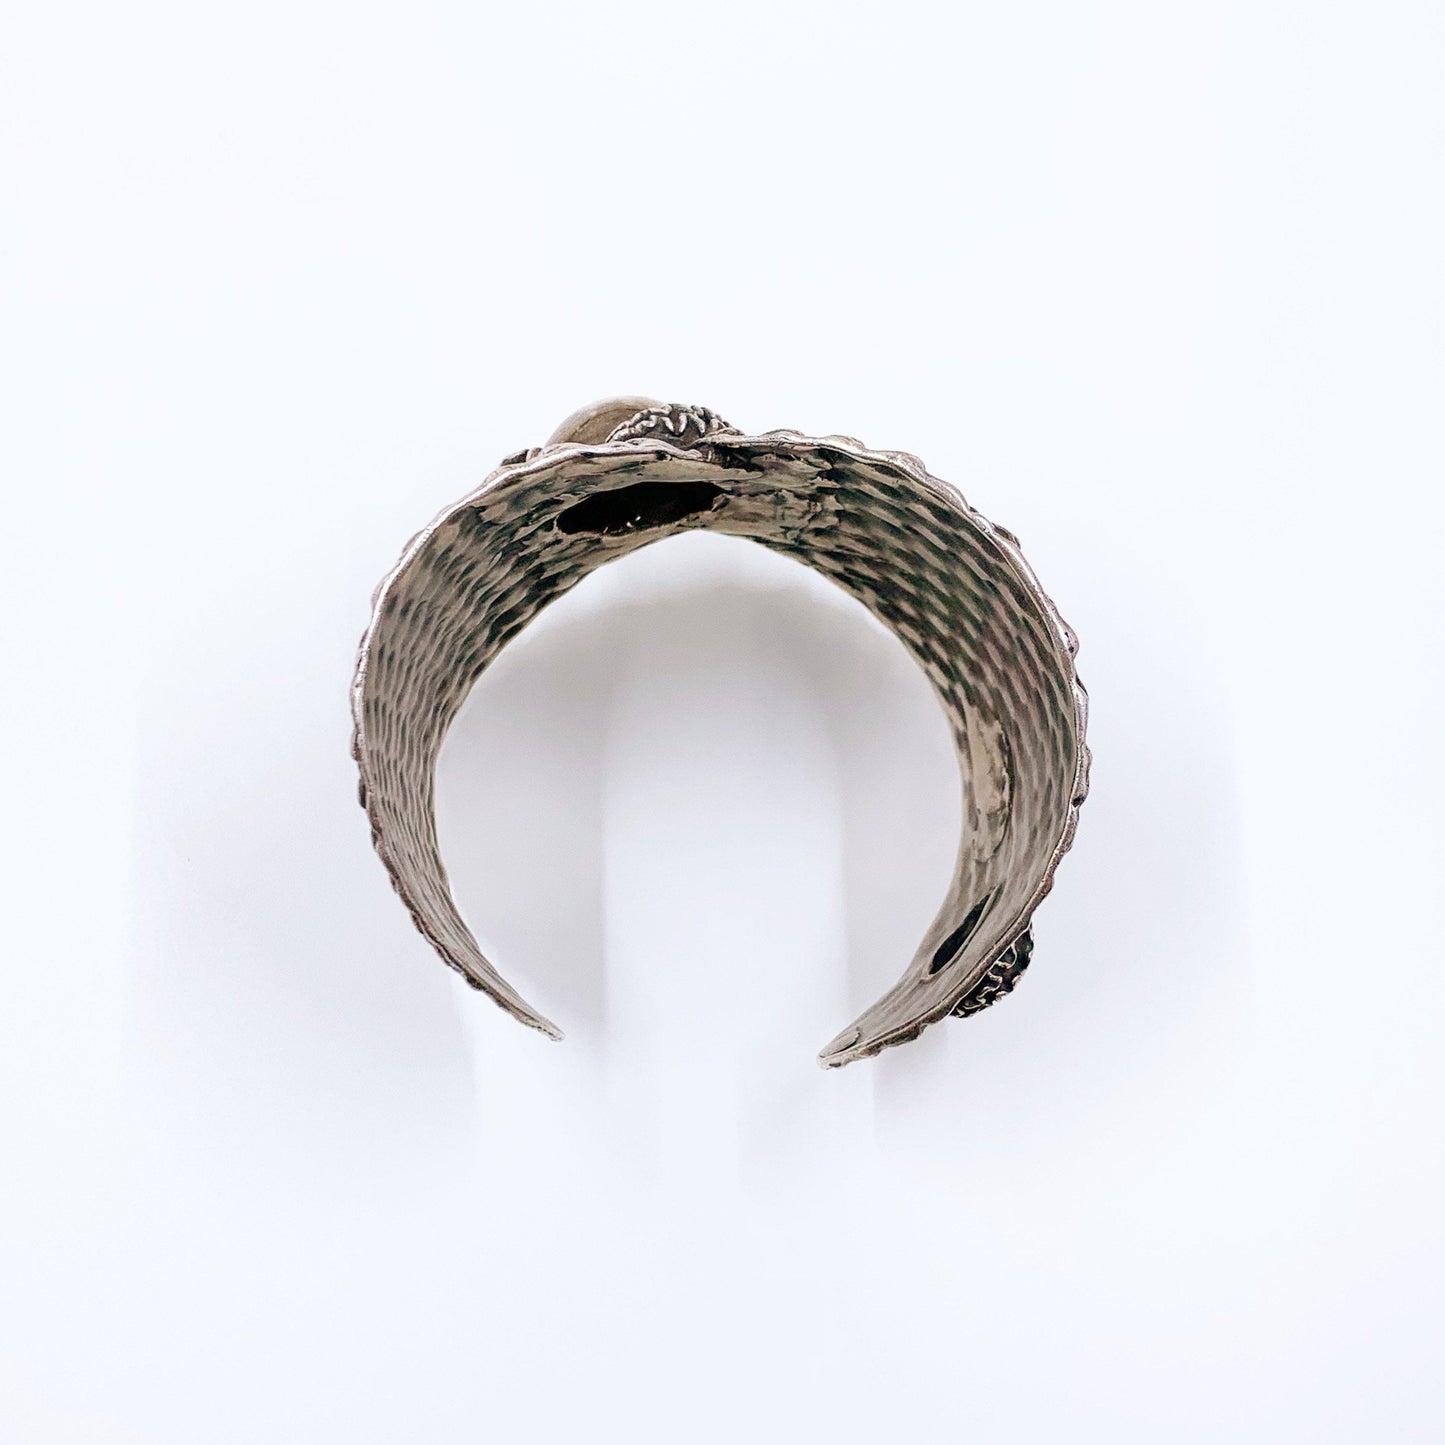 Vintage Silver Brutalist Textured Cuff Bracelet | Modernist Silver Hand Wrought Cuff | Vintage Studio Made Brutalist Bracelet